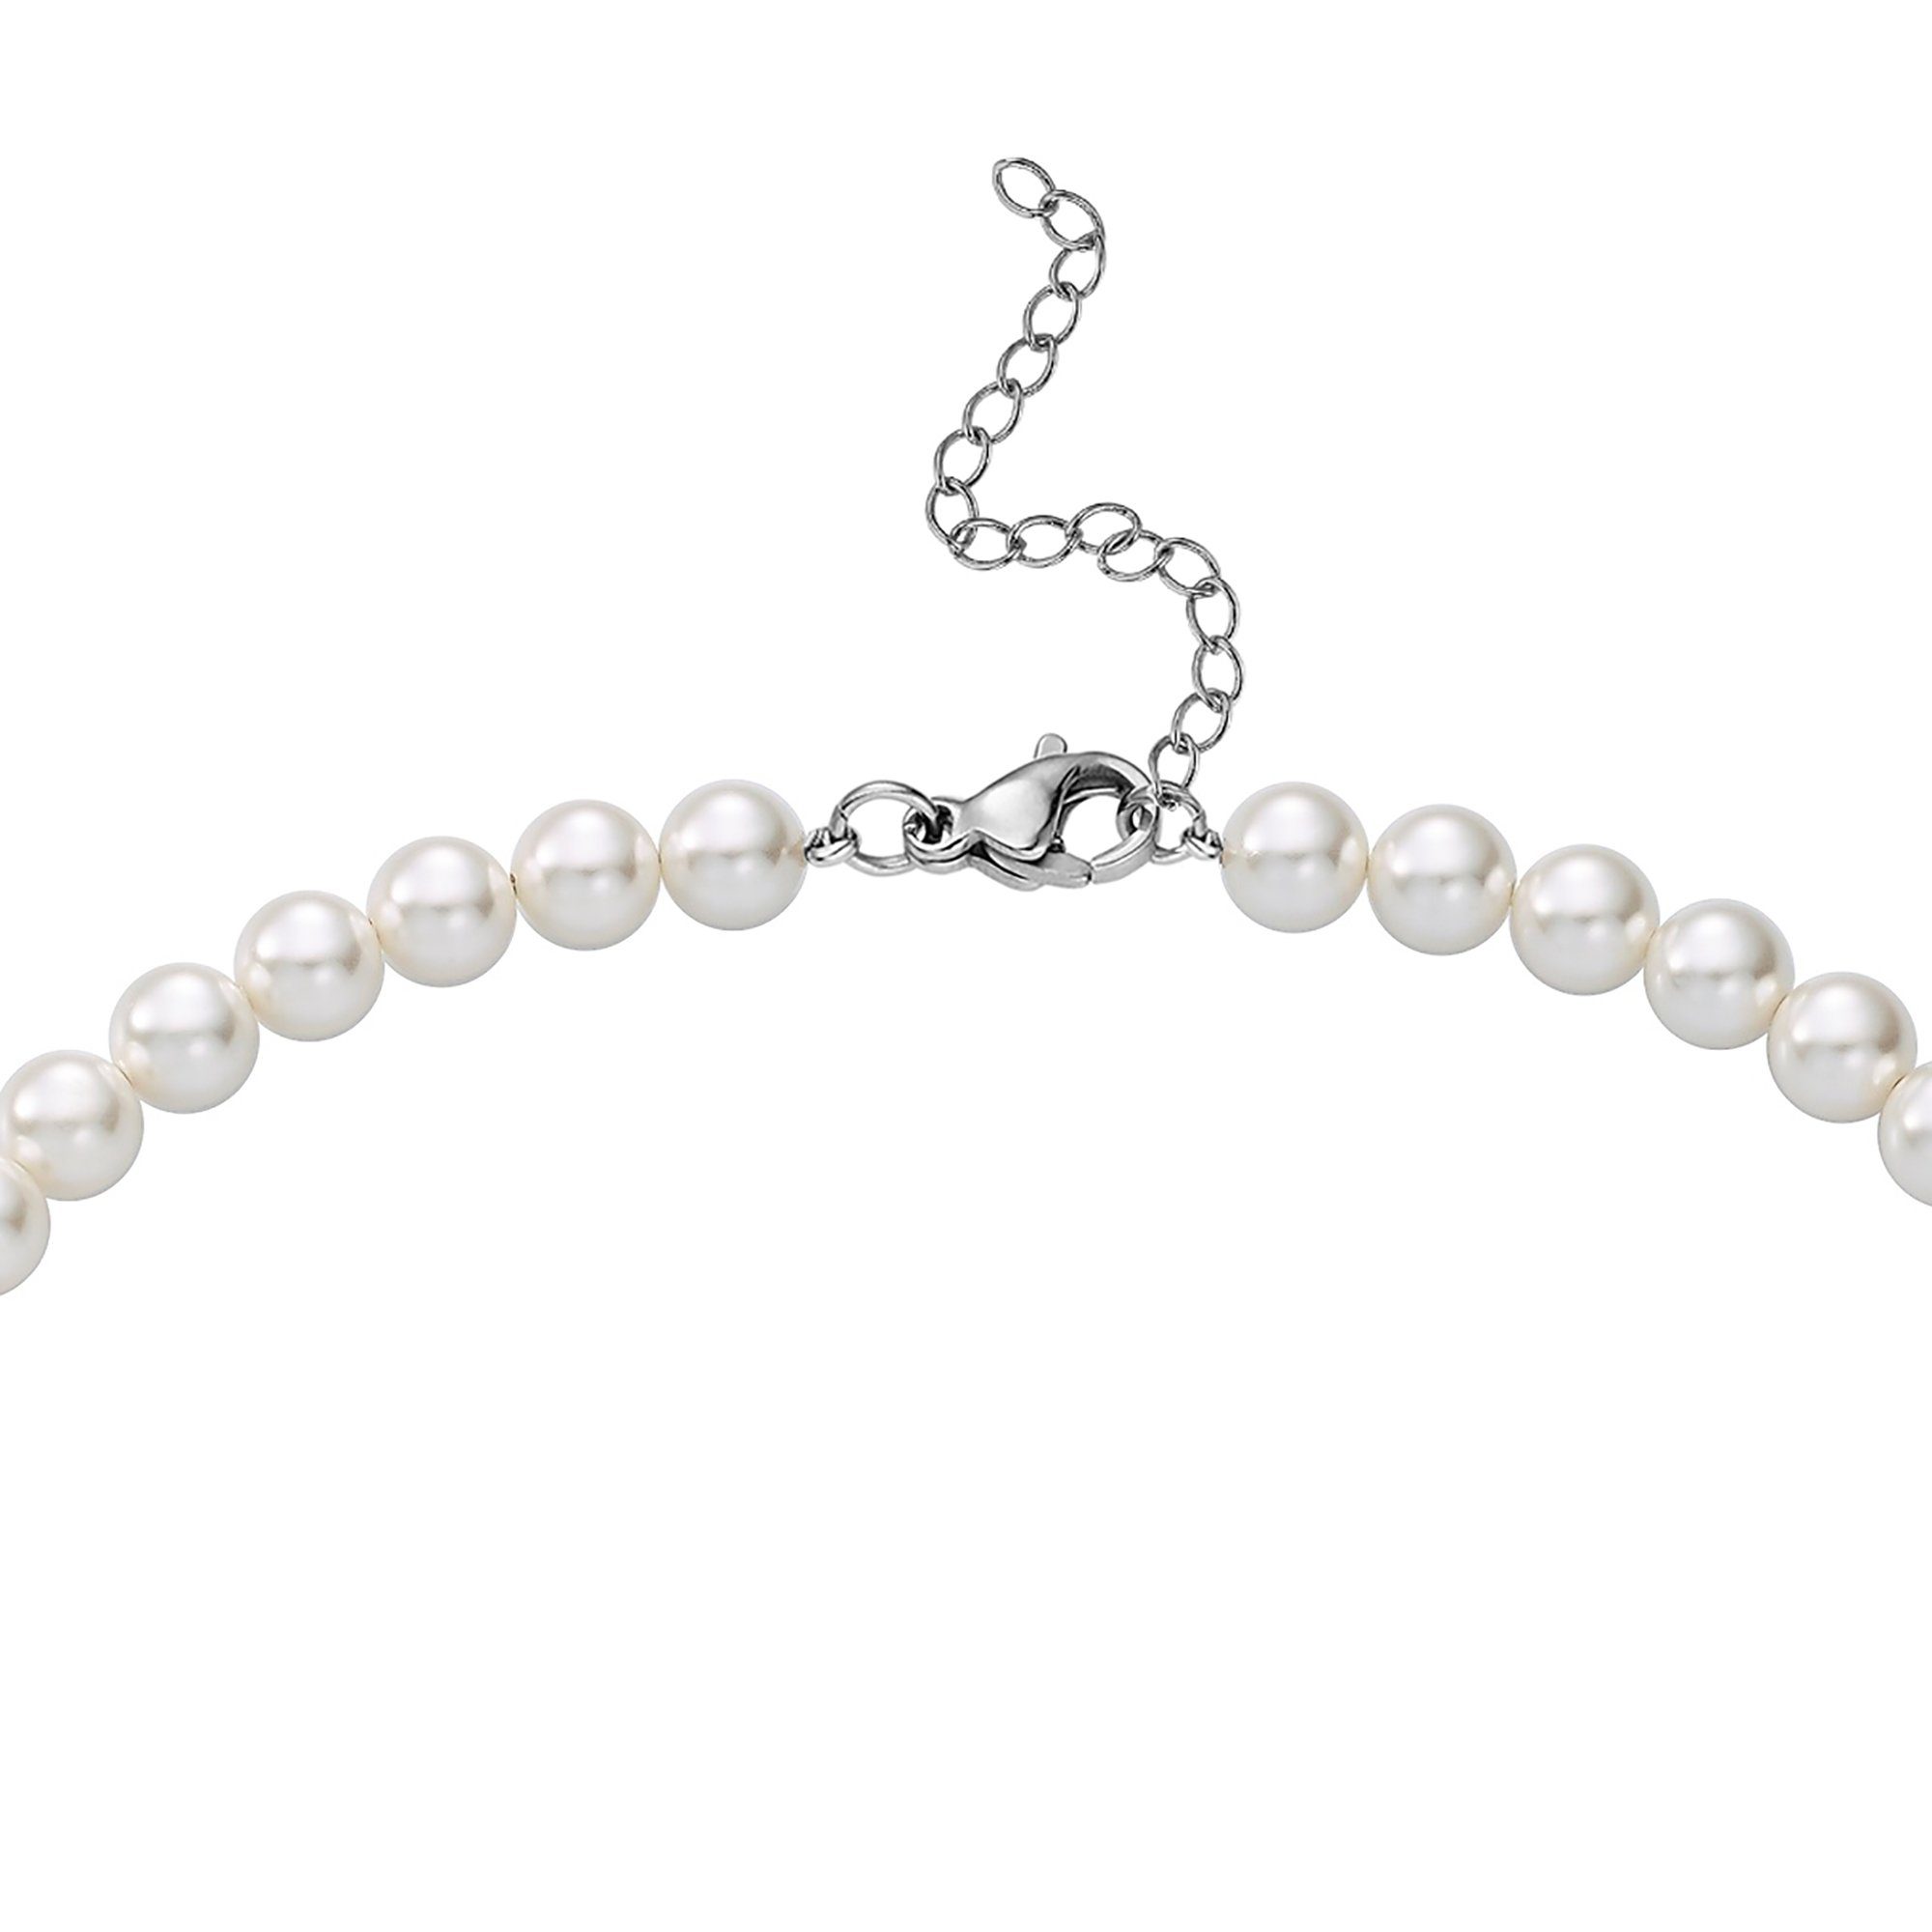 Heideman Collier Perlenkette No. oder Collier 8 silberfarben mit weiß Perlen glanzmatt (inkl. Geschenkverpackung), farbig poliert silberfarben